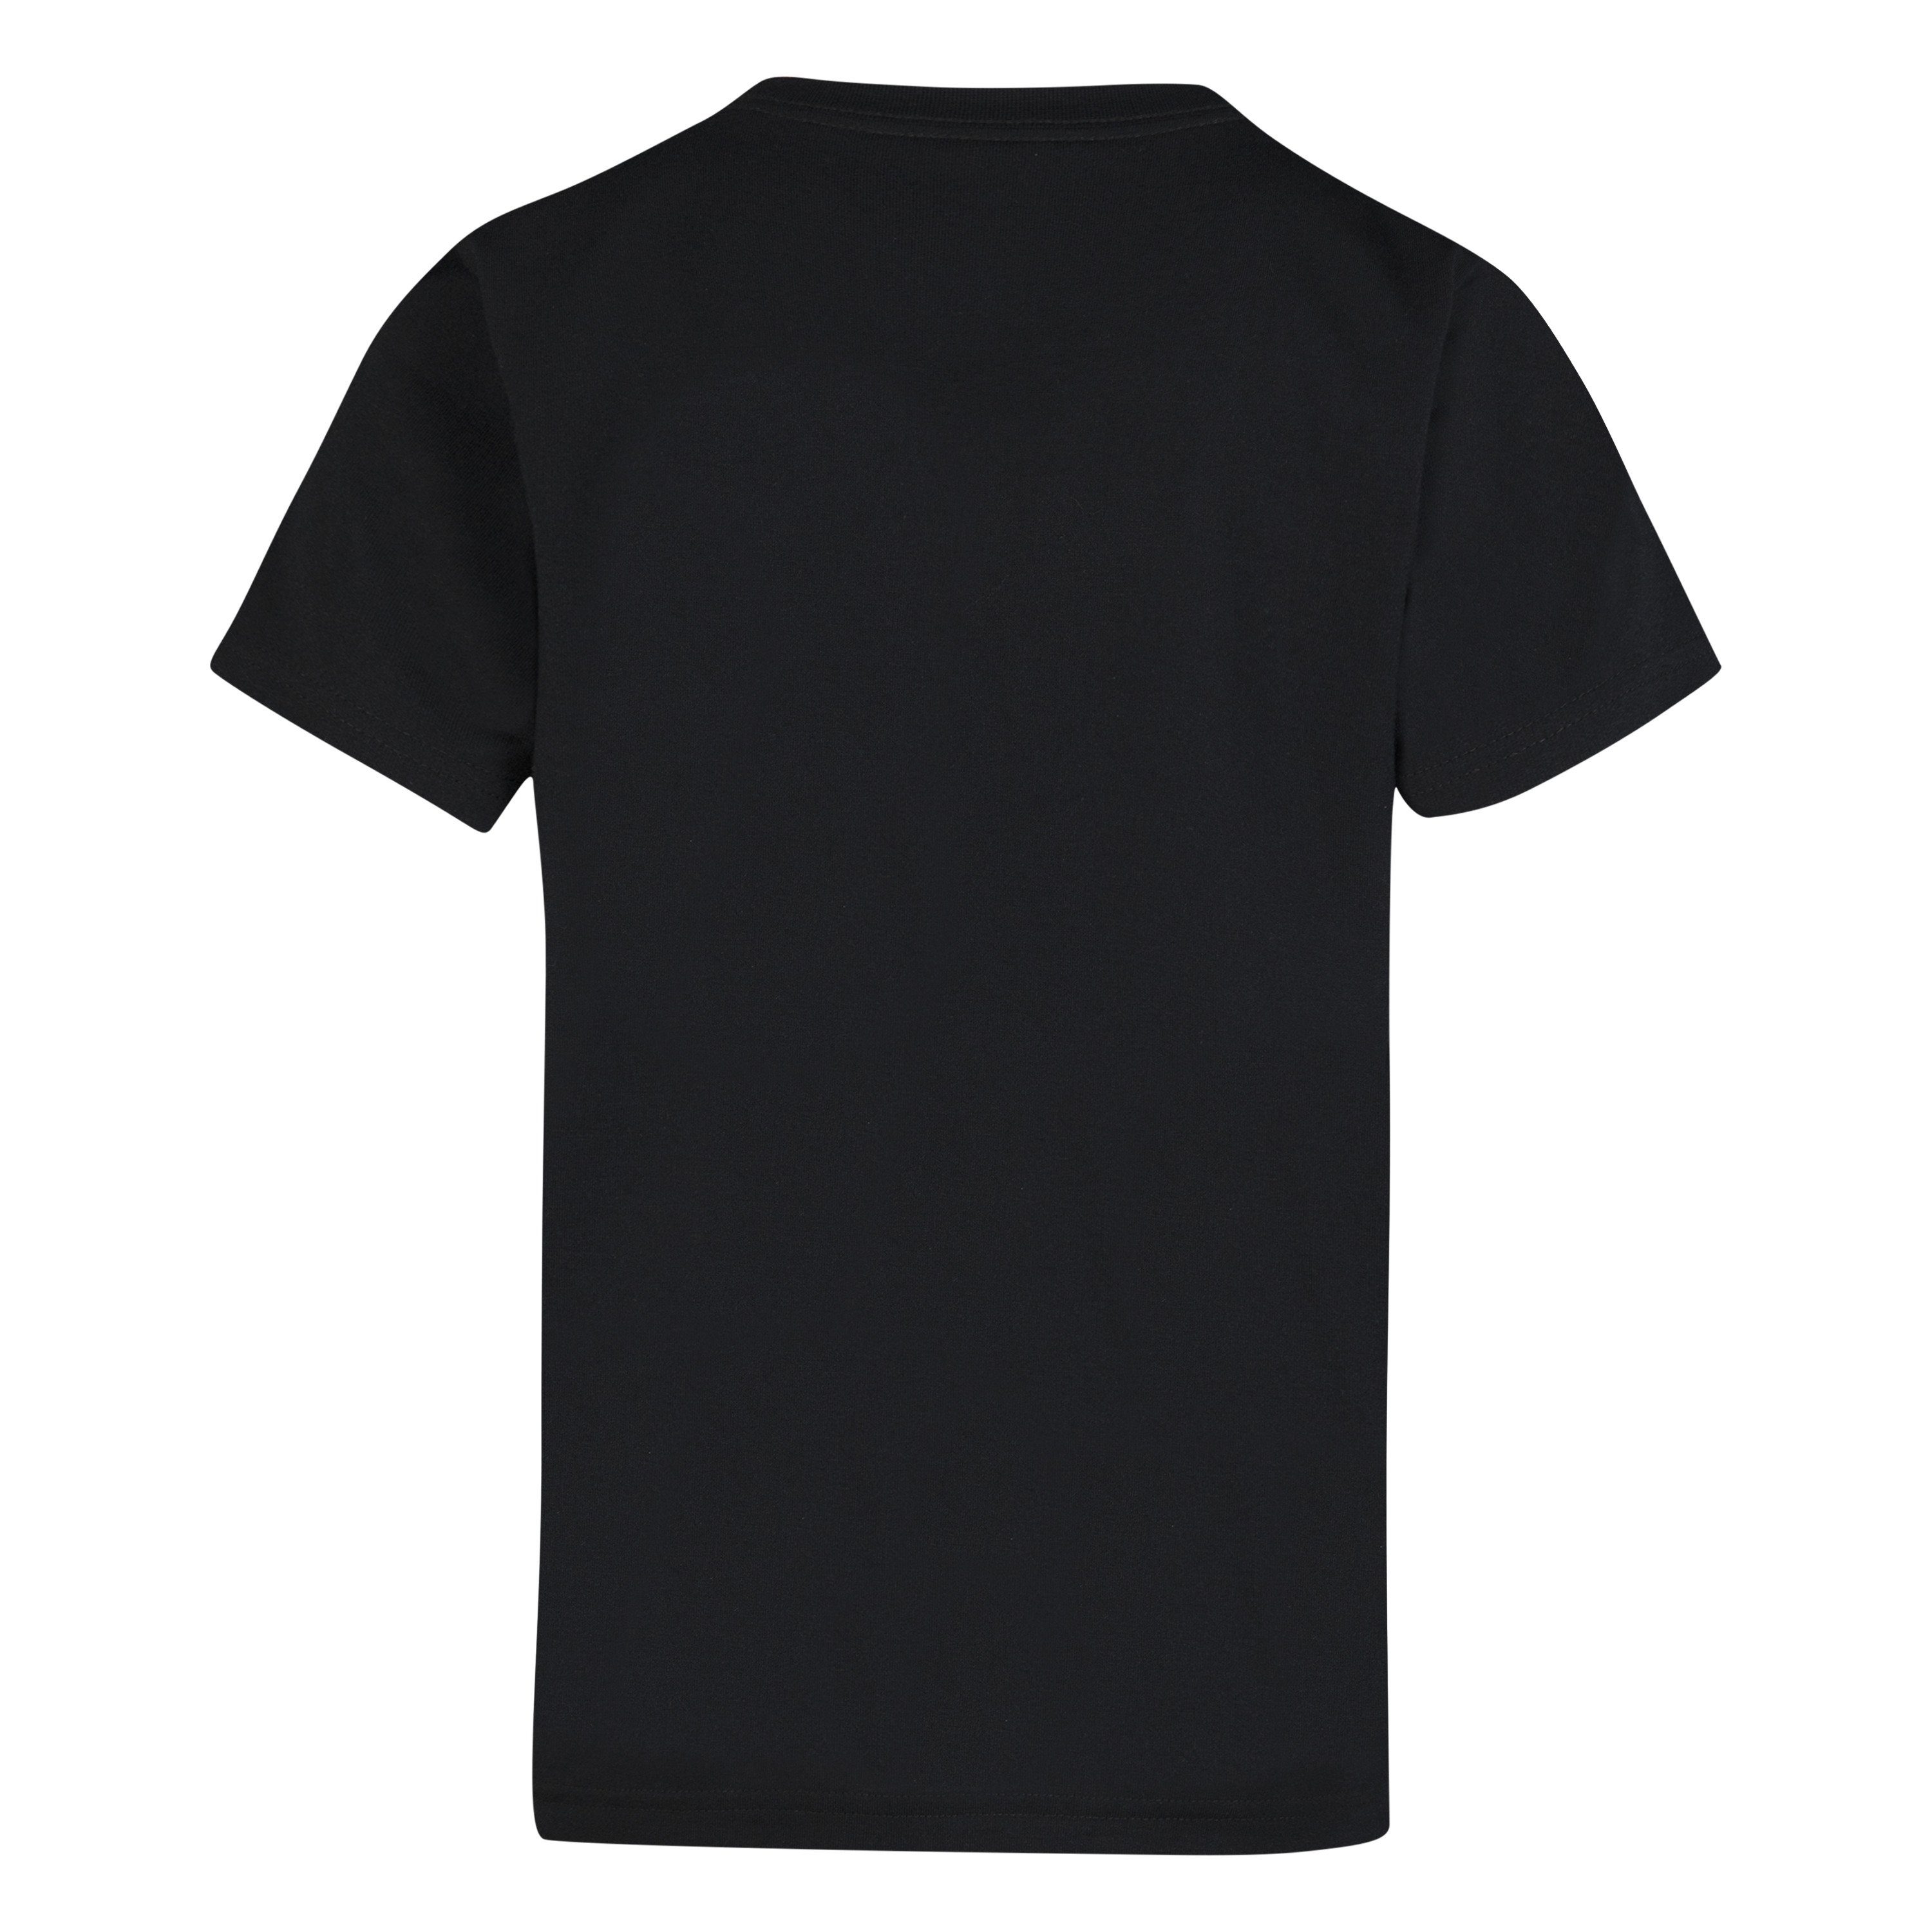 HIT STRIP - Sleeve Short Kinder T-Shirt CHEST für WDMK BLACK Converse TEE